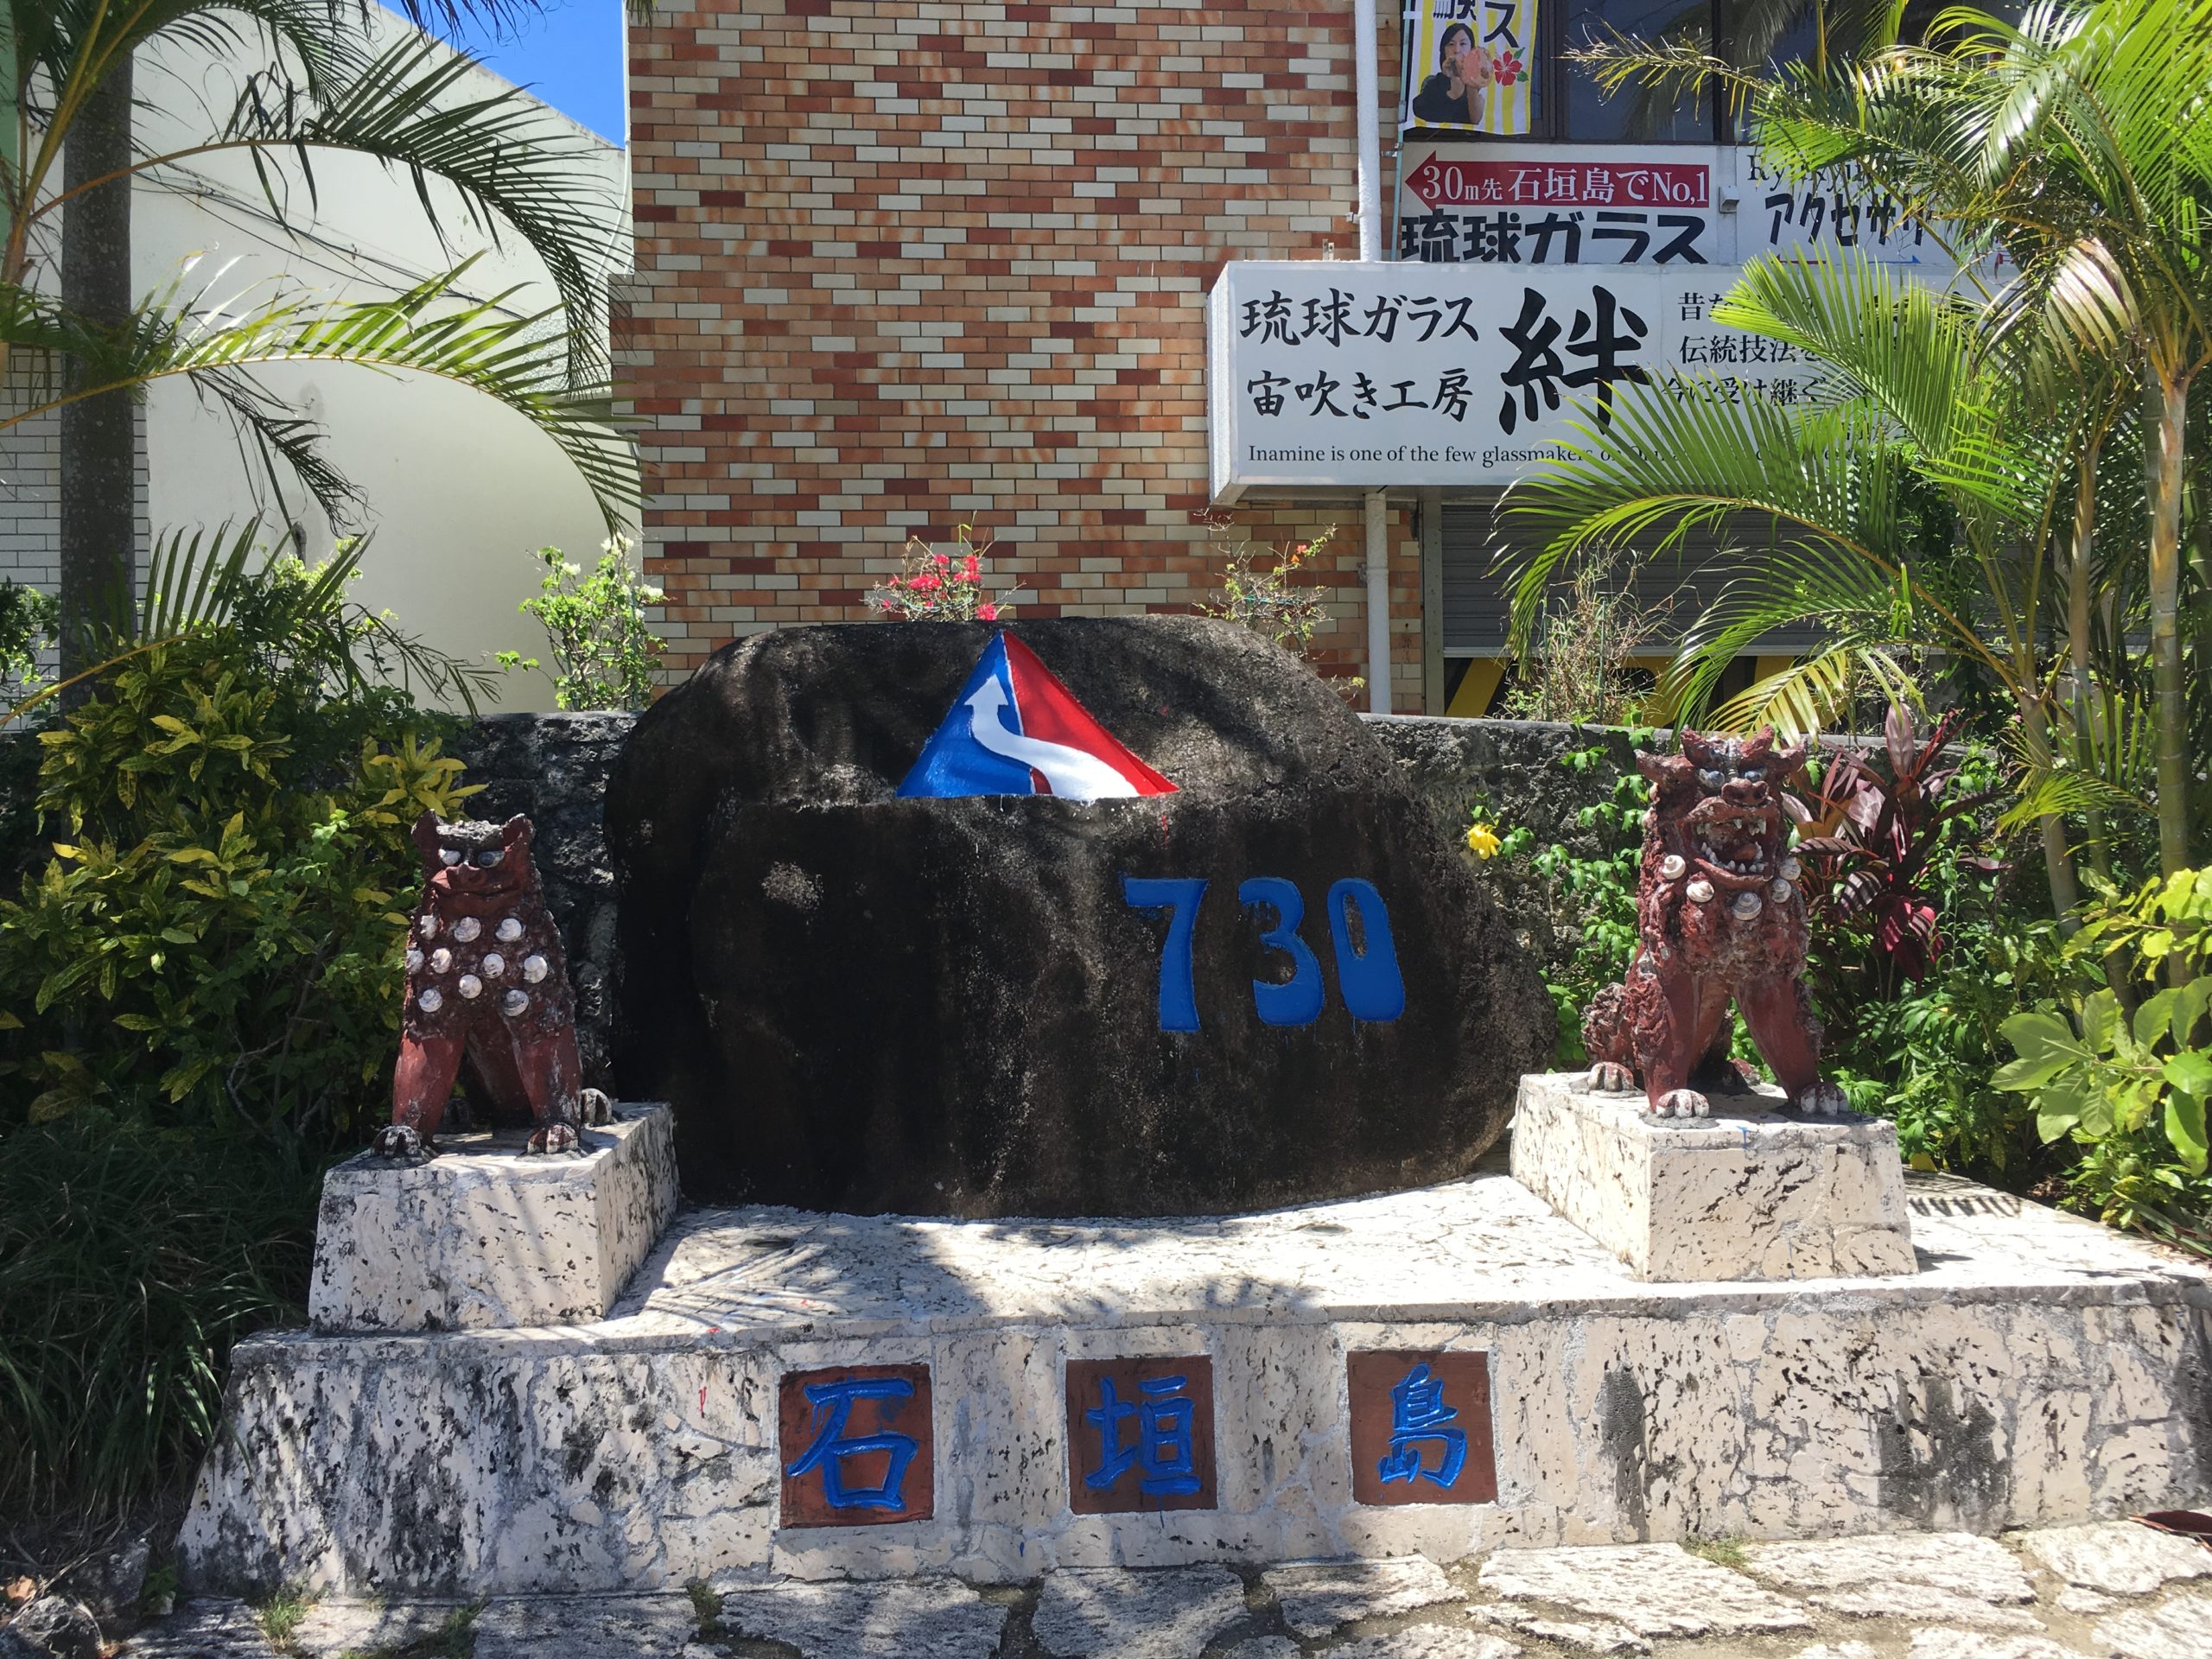 石垣島の観光スポットの730交差点の行き方と遊び方について 石垣島 Adventure Pipi ピピ